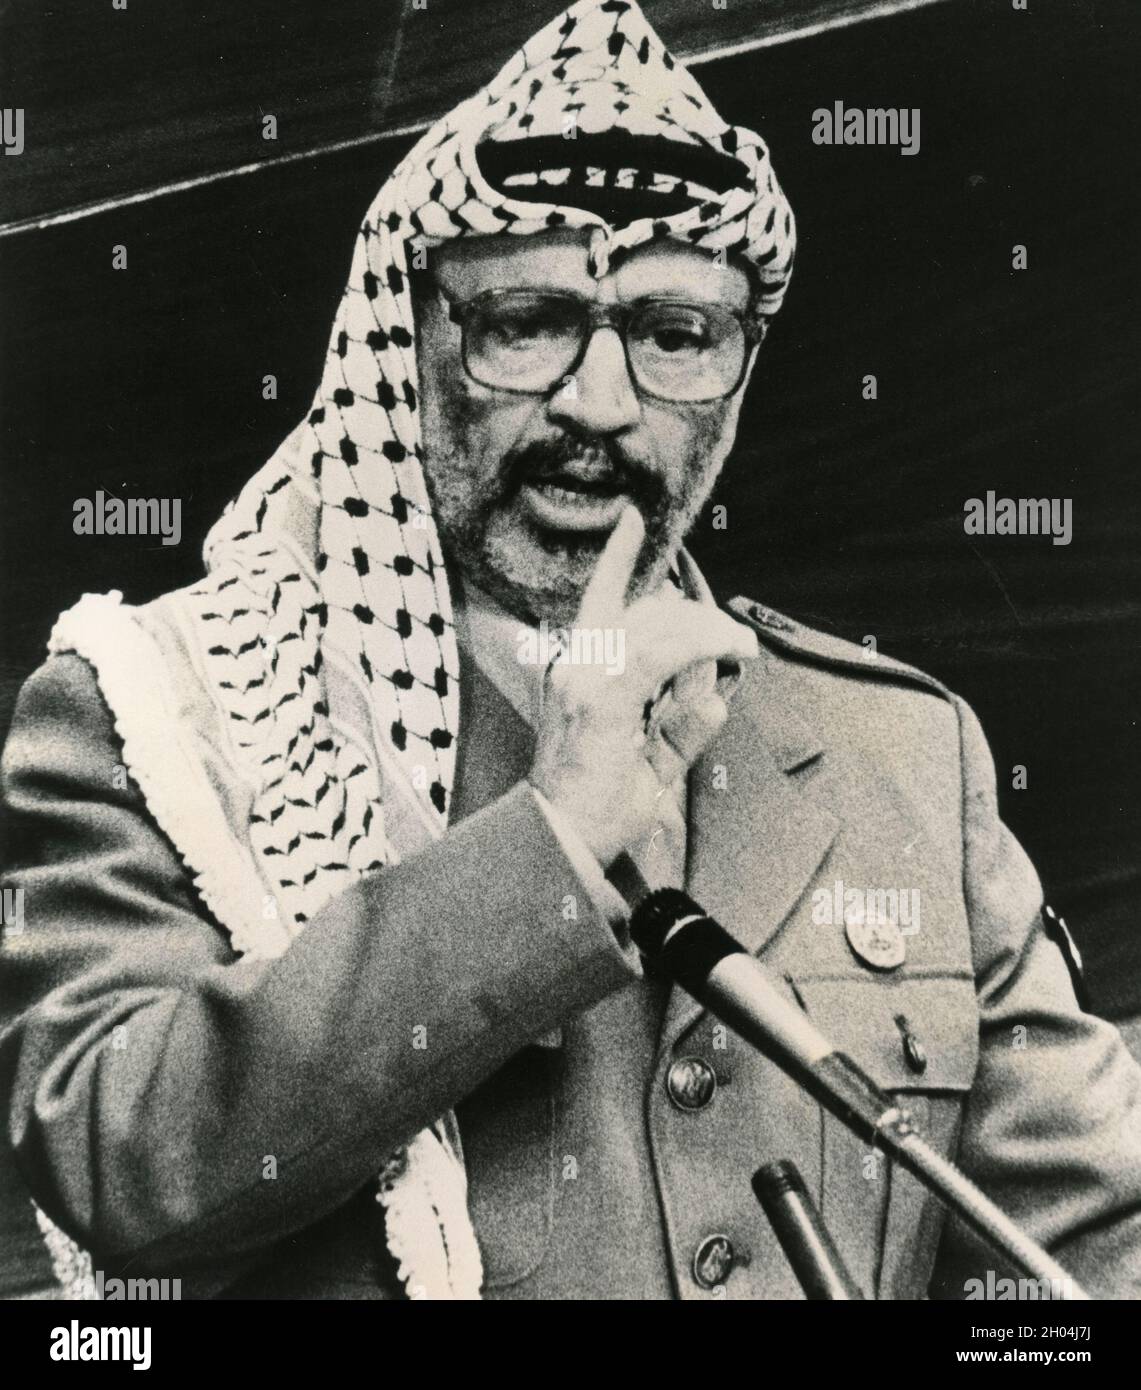 Un homme politique palestinien et le président de l'OLP Yasser Arafat lors d'un rassemblement dans les années 1980 Banque D'Images